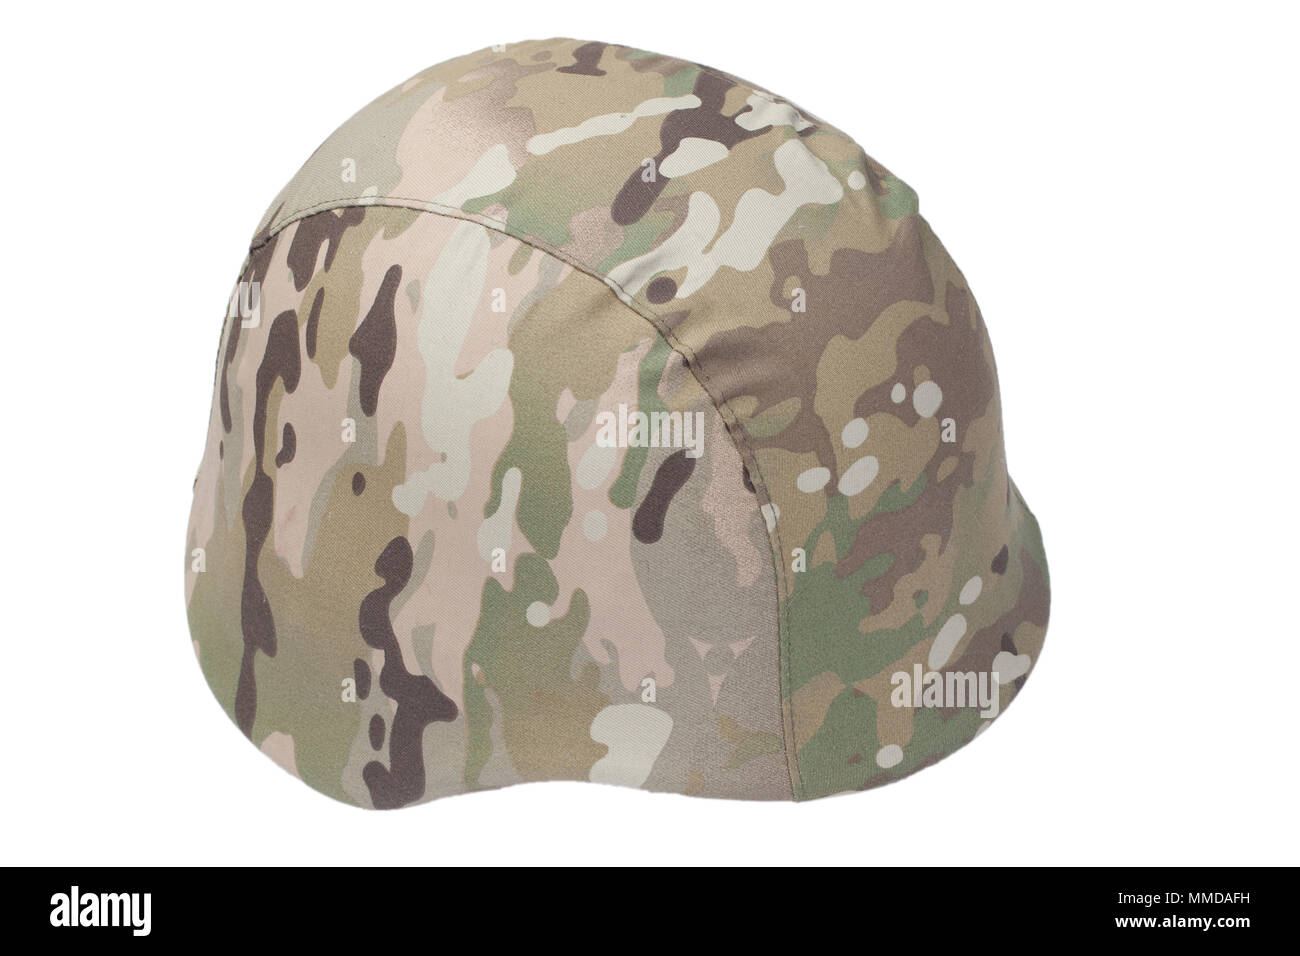 camouflage military helmet Stock Photo